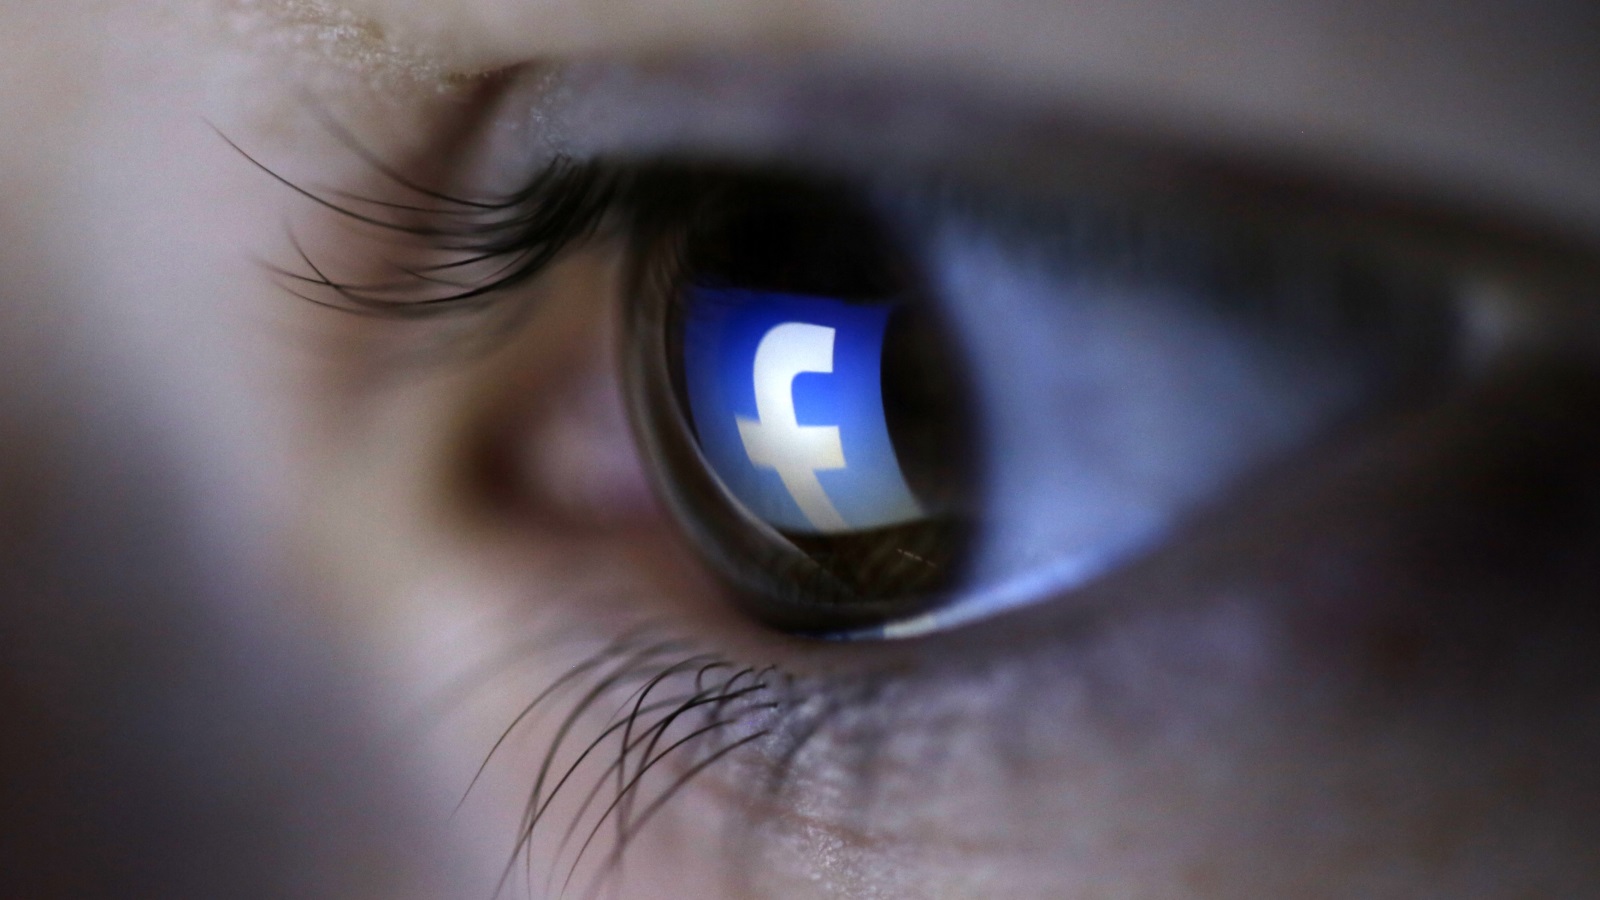 شركة فيسبوك أكدت أن تلصصها على أجهزة المستخدمين كان بموافقتهم وبعلم أولياء أمورهم إن كانوا مراهقين (رويترز)